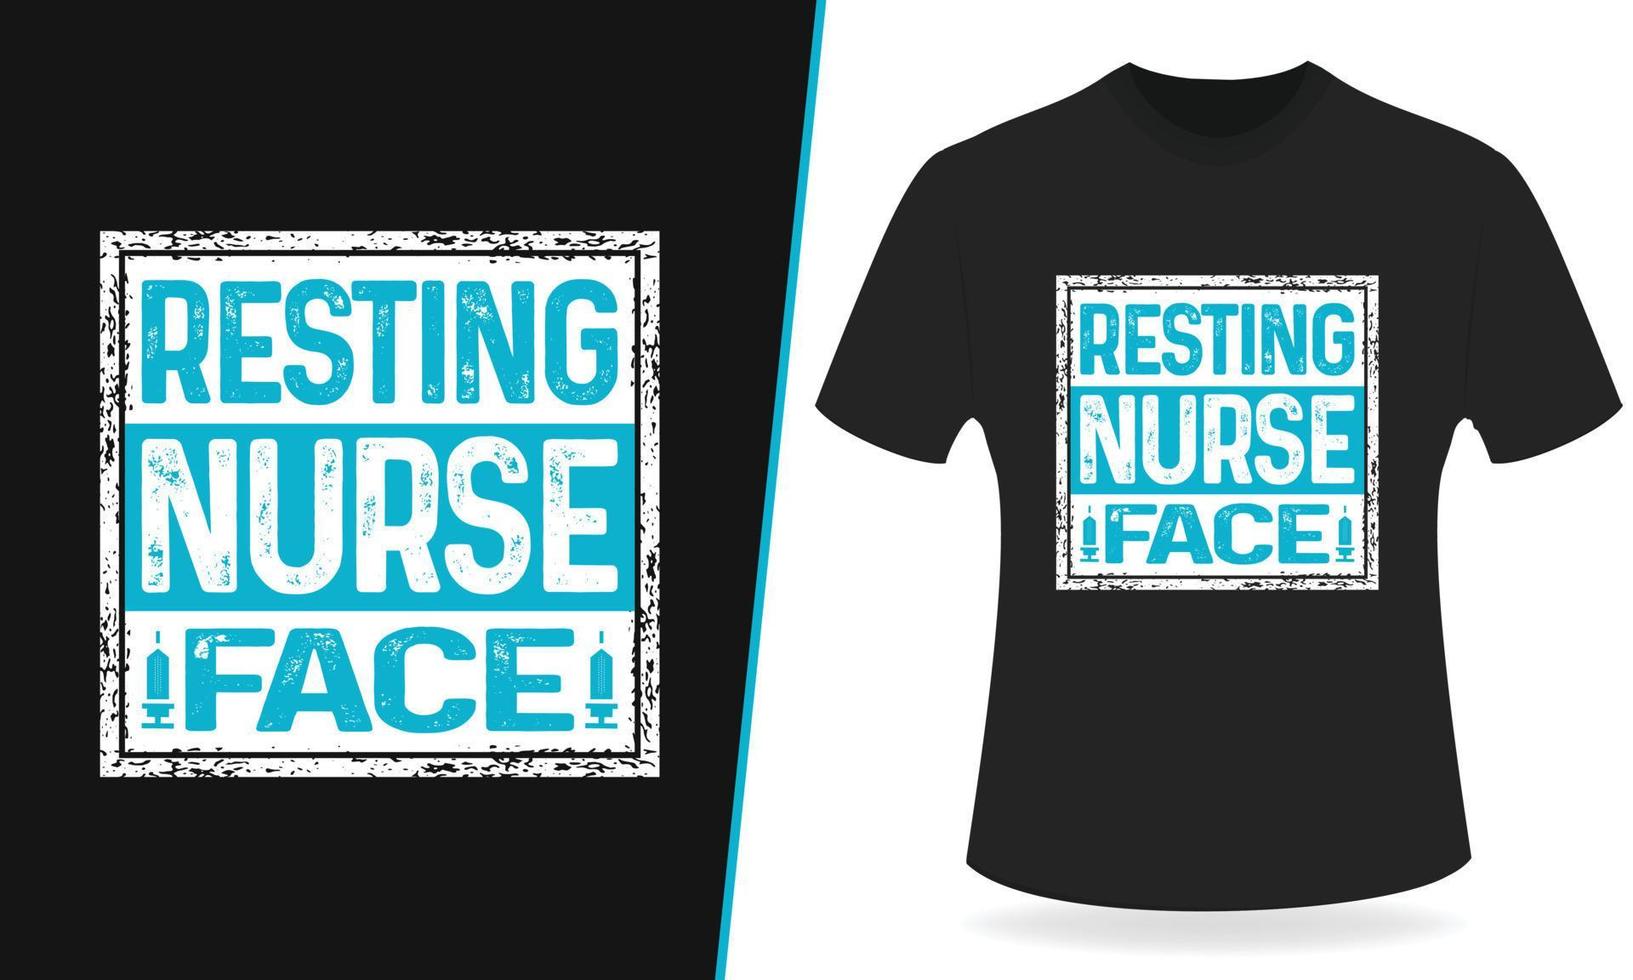 ruhendes krankenschwestergesicht typografie t-shirt design vektor